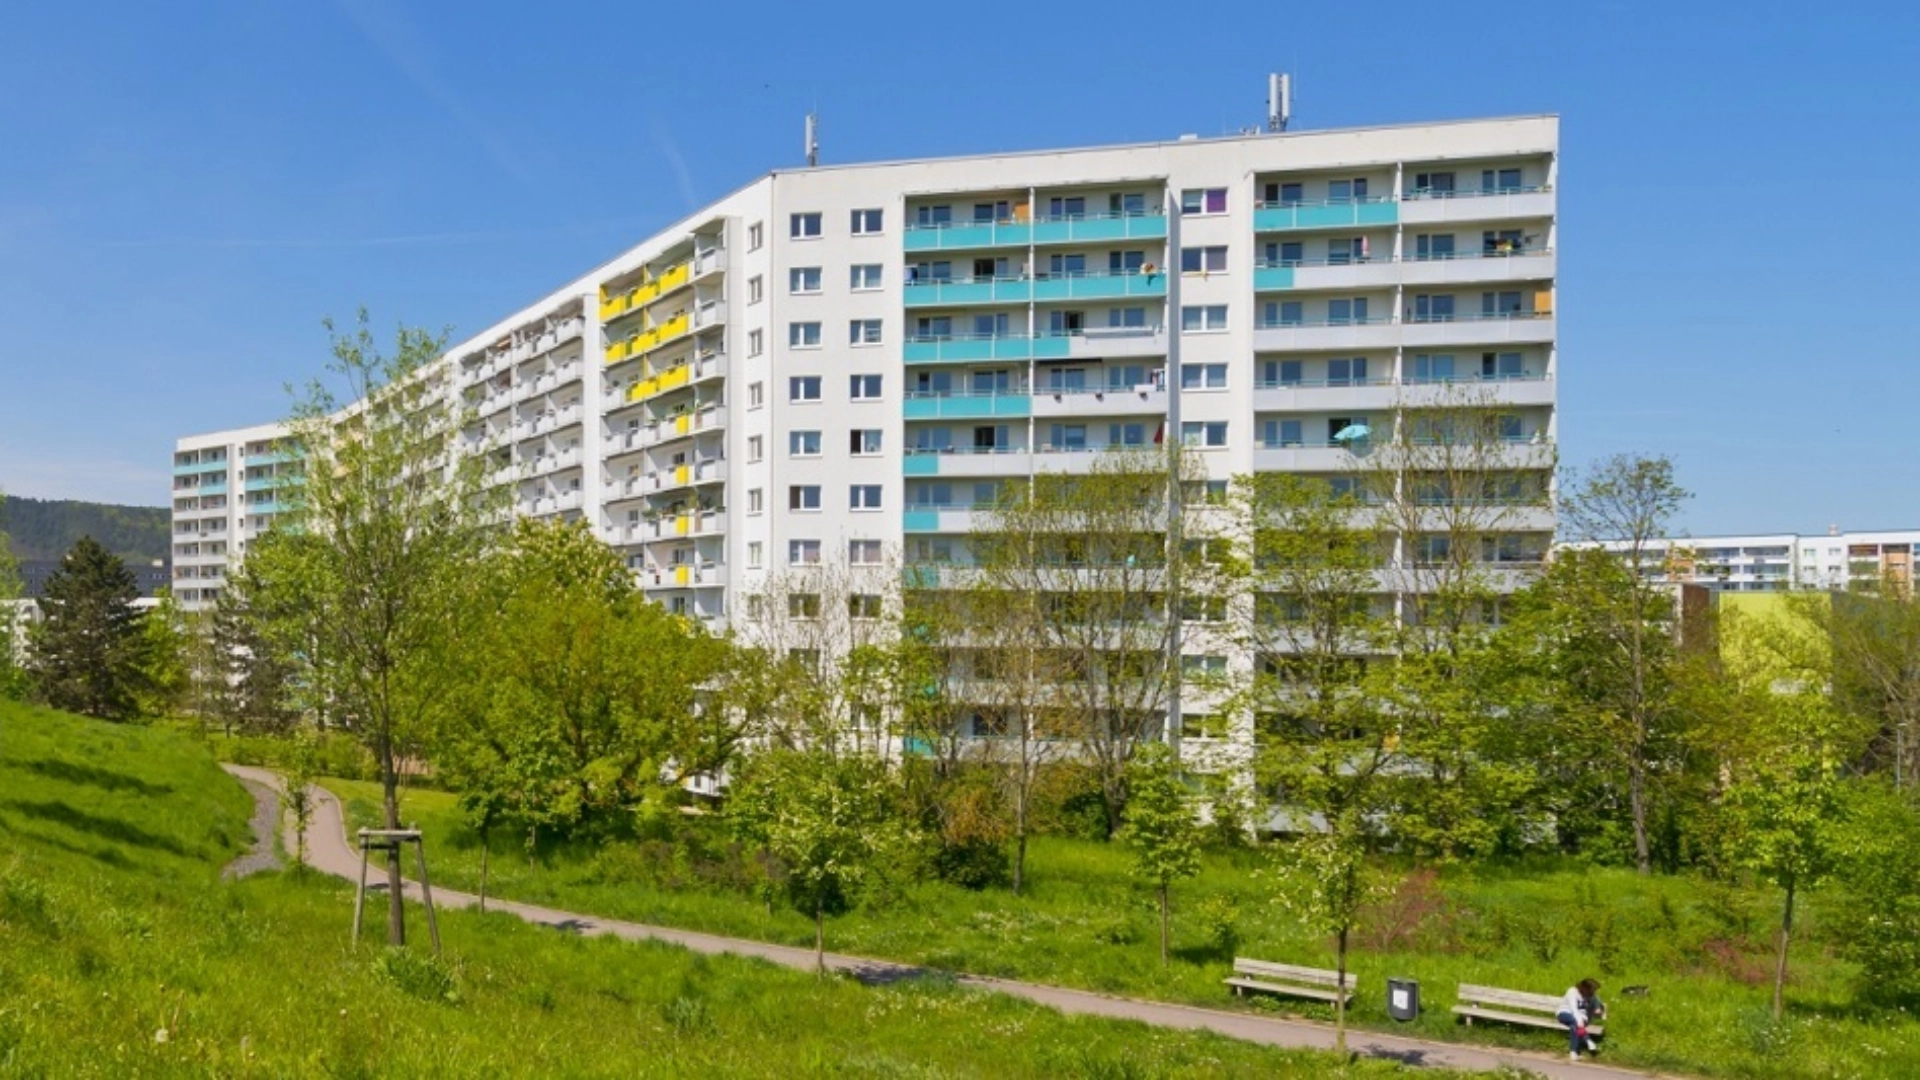 Vermietung von Wohnungen in Jena